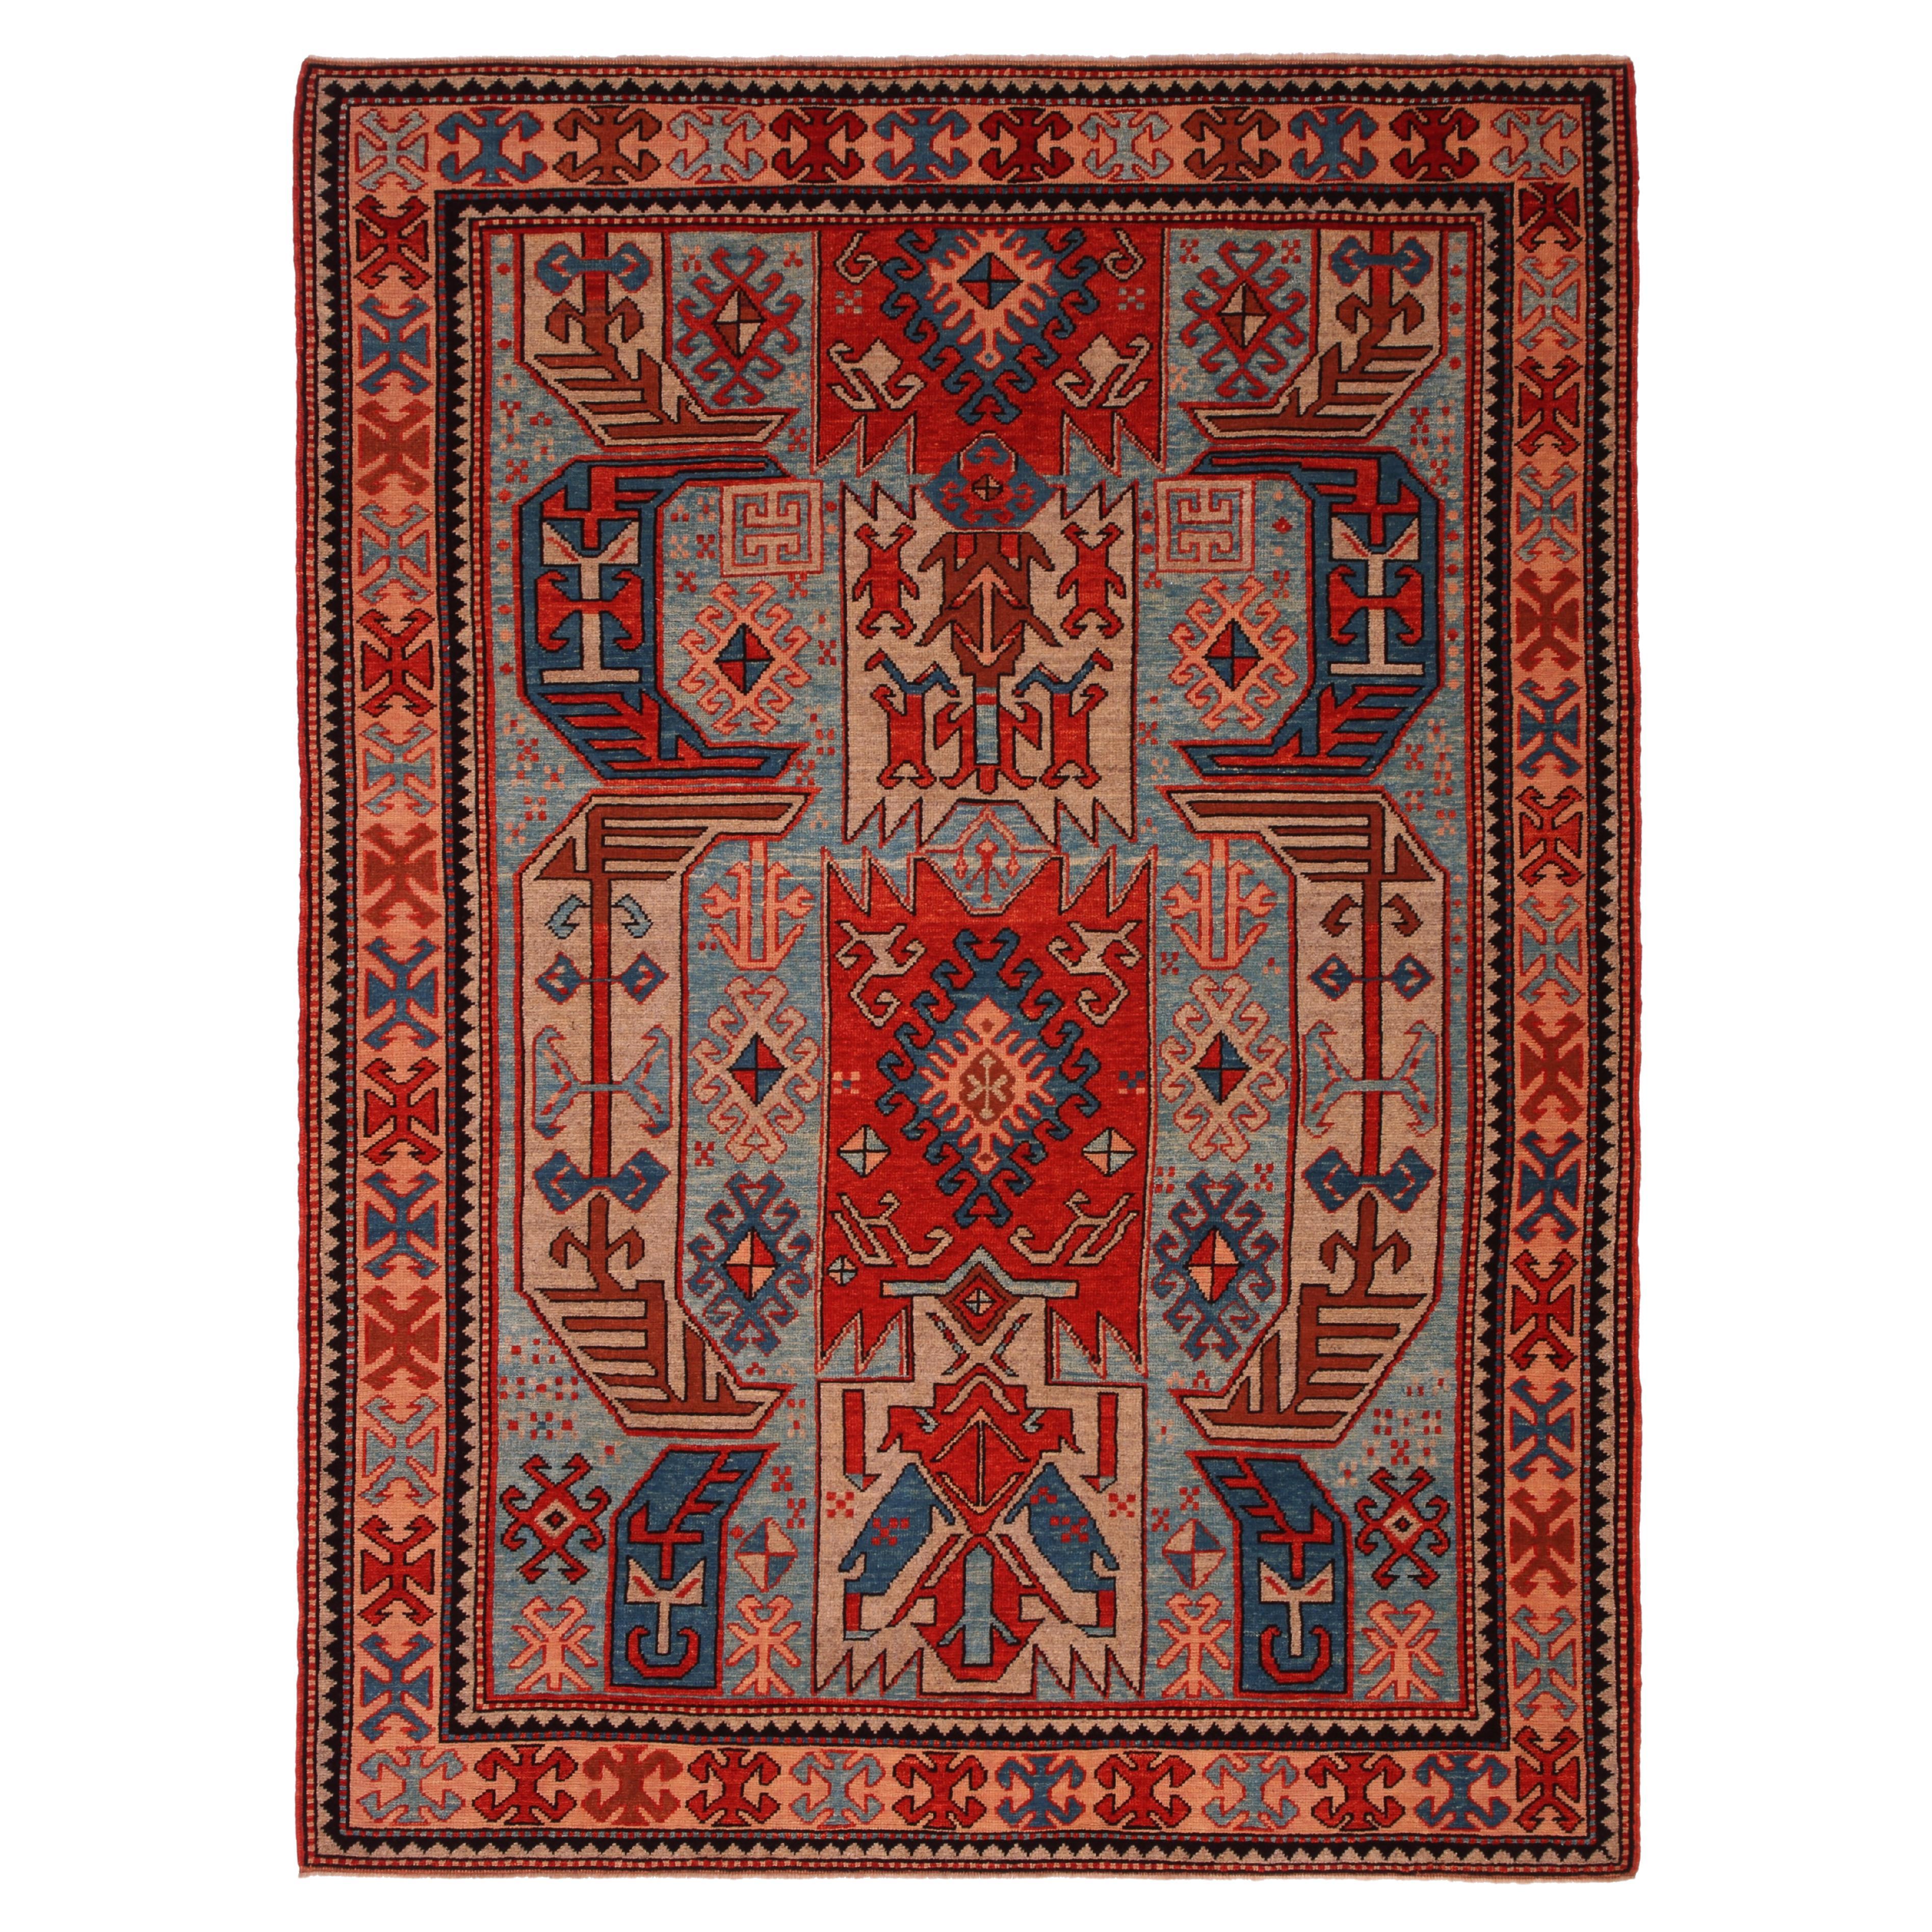 Ararat Rugs Lenkoran Rug Caucasian Revival 19th Century Carpet, Natural Dyed For Sale